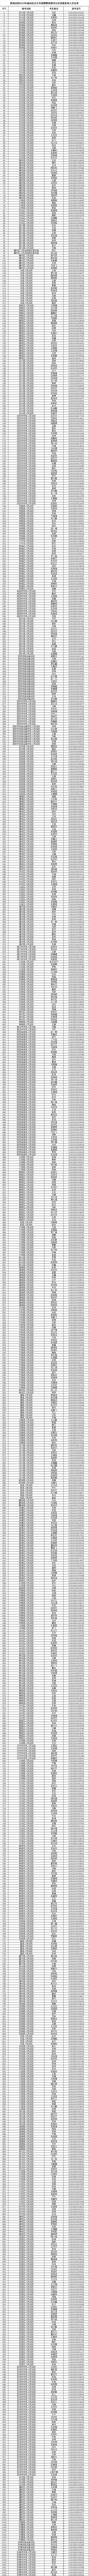 2019陕西法院书记员资审名单公示(图1)